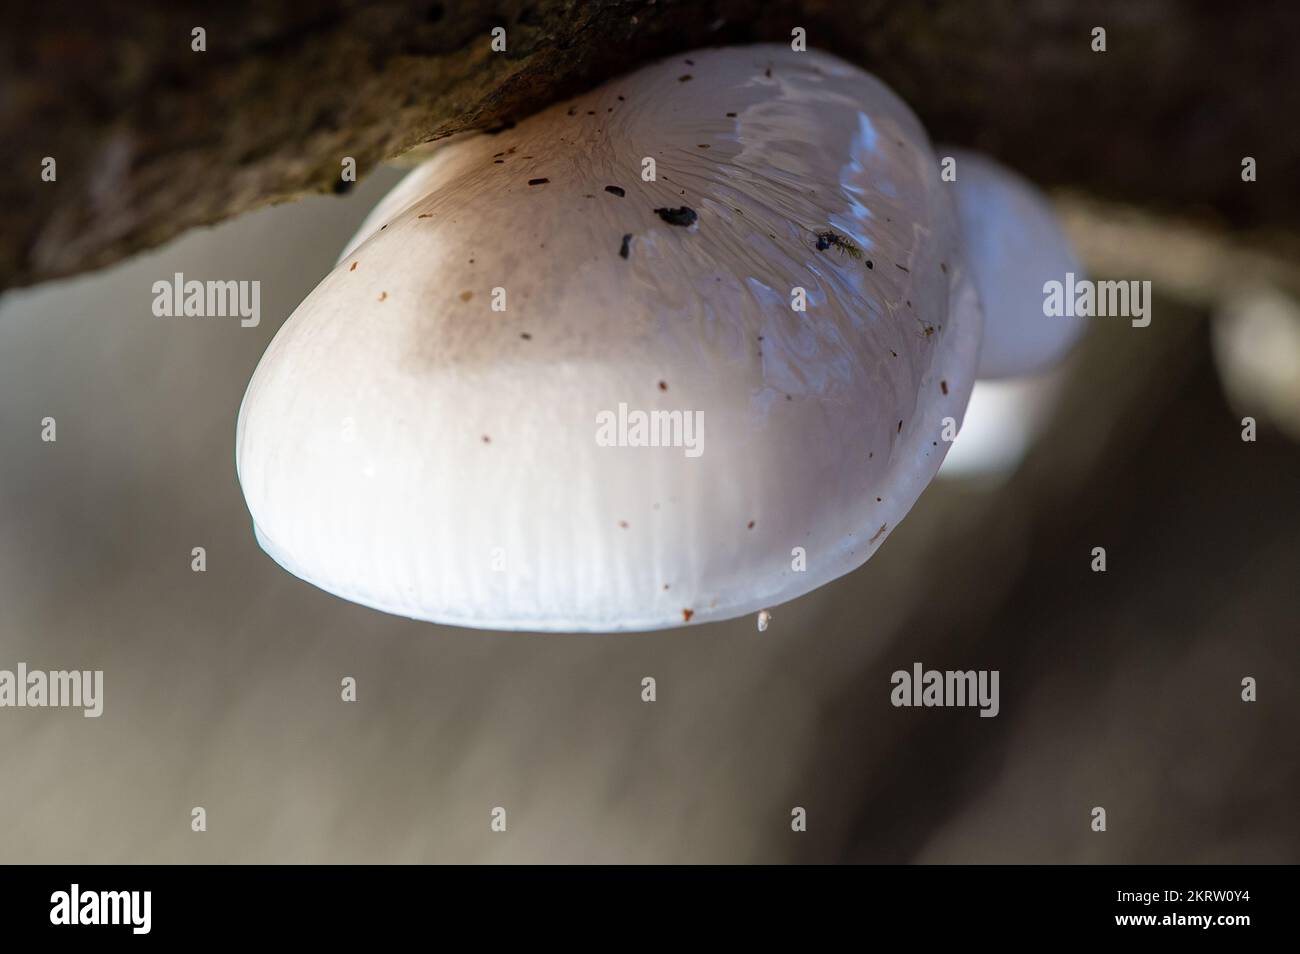 Farnham Common, Royaume-Uni. 28th novembre 2022. Oudemansiella mucida, champignon de la porcelaine. Le champignon blanc est semi-translucide, mince et ressemble à des blancs d'oeufs. Il est parfois fait référence à un champignon Beech Tuft ou Poached Egg. Il s'agit d'un champignon basidiomycète commun et répandu de la famille des Physalacriacées et on peut souvent le voir haut sur les arbres de hêtre. Il est comestible une fois que le mucus est lavé et sur un jour de brise, ils peuvent tomber au sol comme de petits parachutes. Burnham Beeches est un site d'intérêt scientifique spécial, une réserve naturelle nationale et un espace européen spécial de conservation. Crédit: Maur Banque D'Images